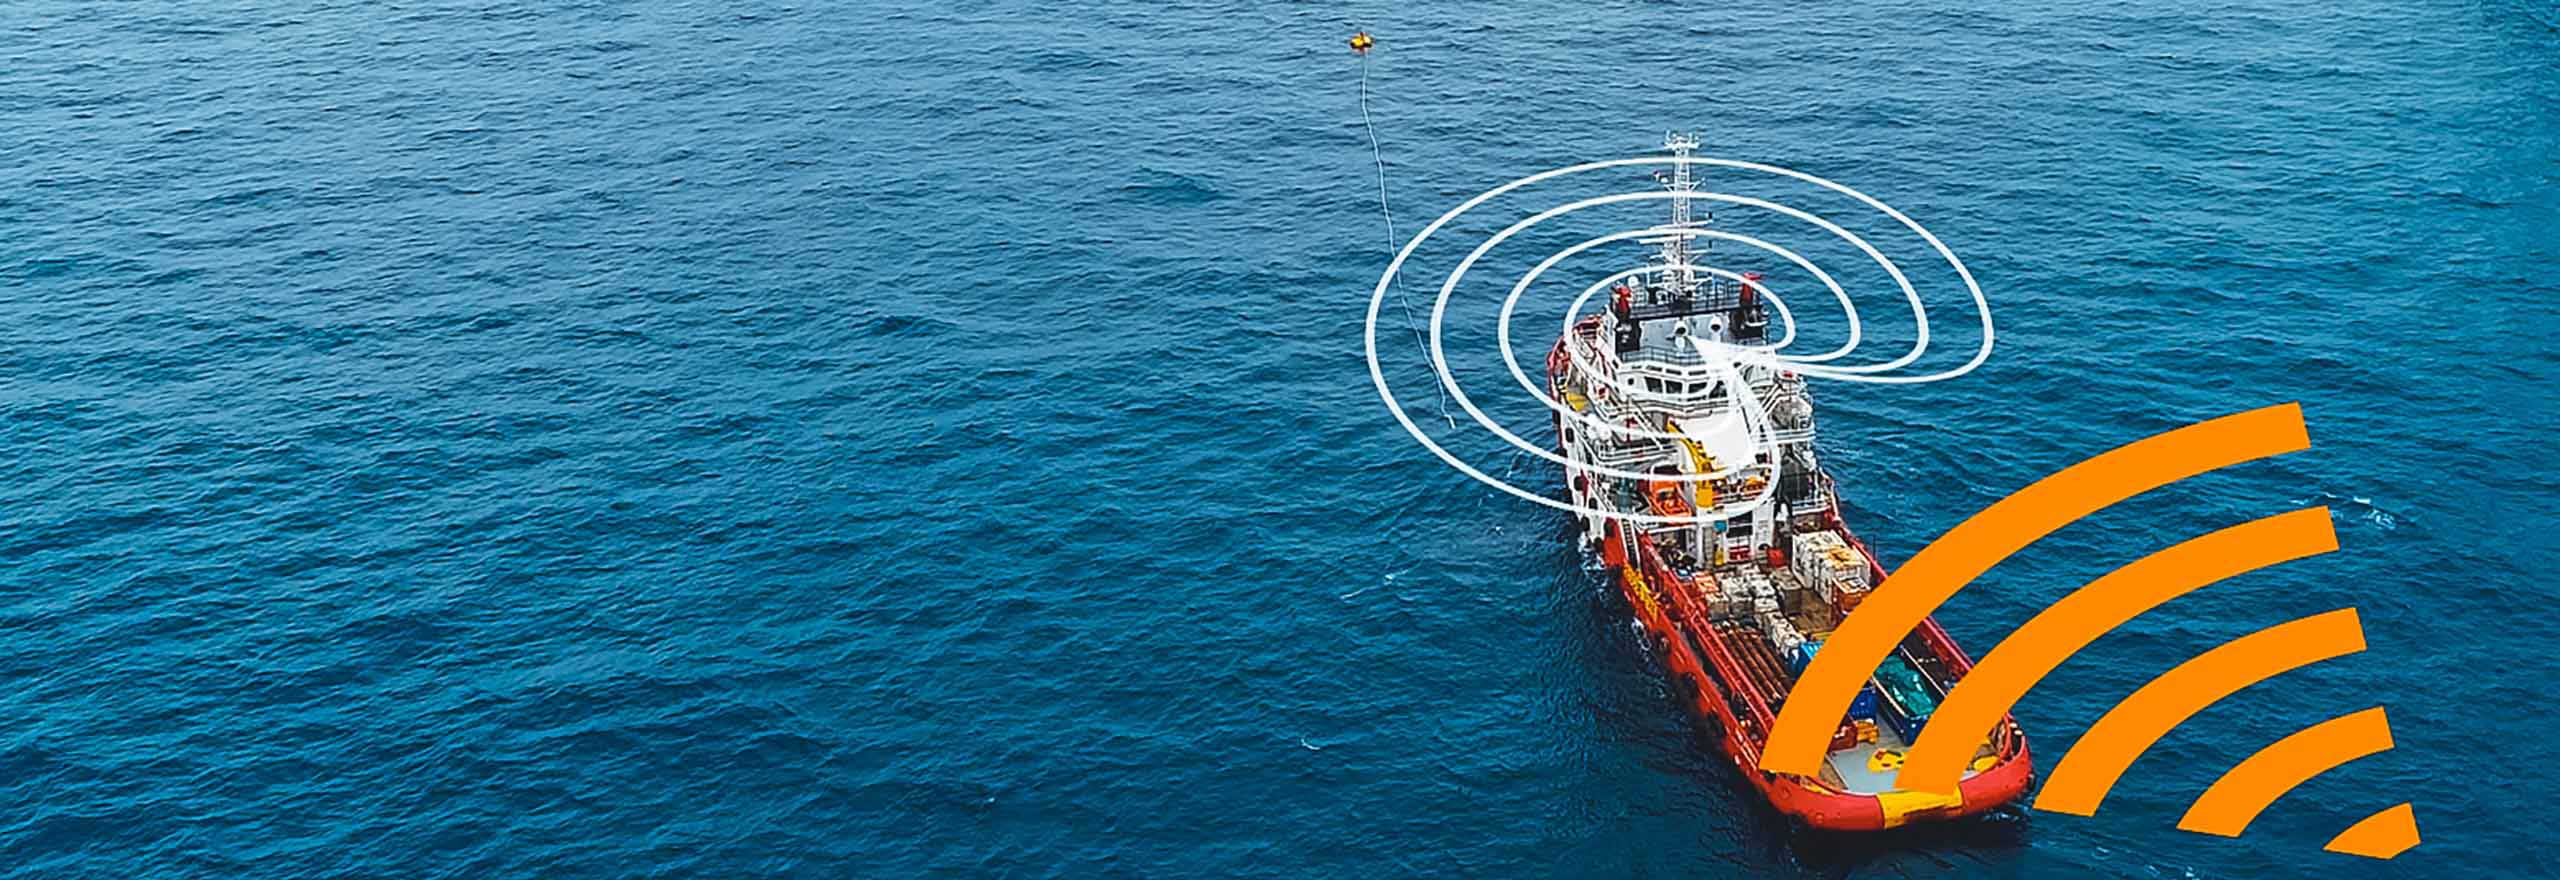 Come la tecnologia anti-inceppamento reagisce e attenua il jamming su un'imbarcazione rossa e bianca in mezzo all'oceano, vicino a una piattaforma petrolifera offshore.